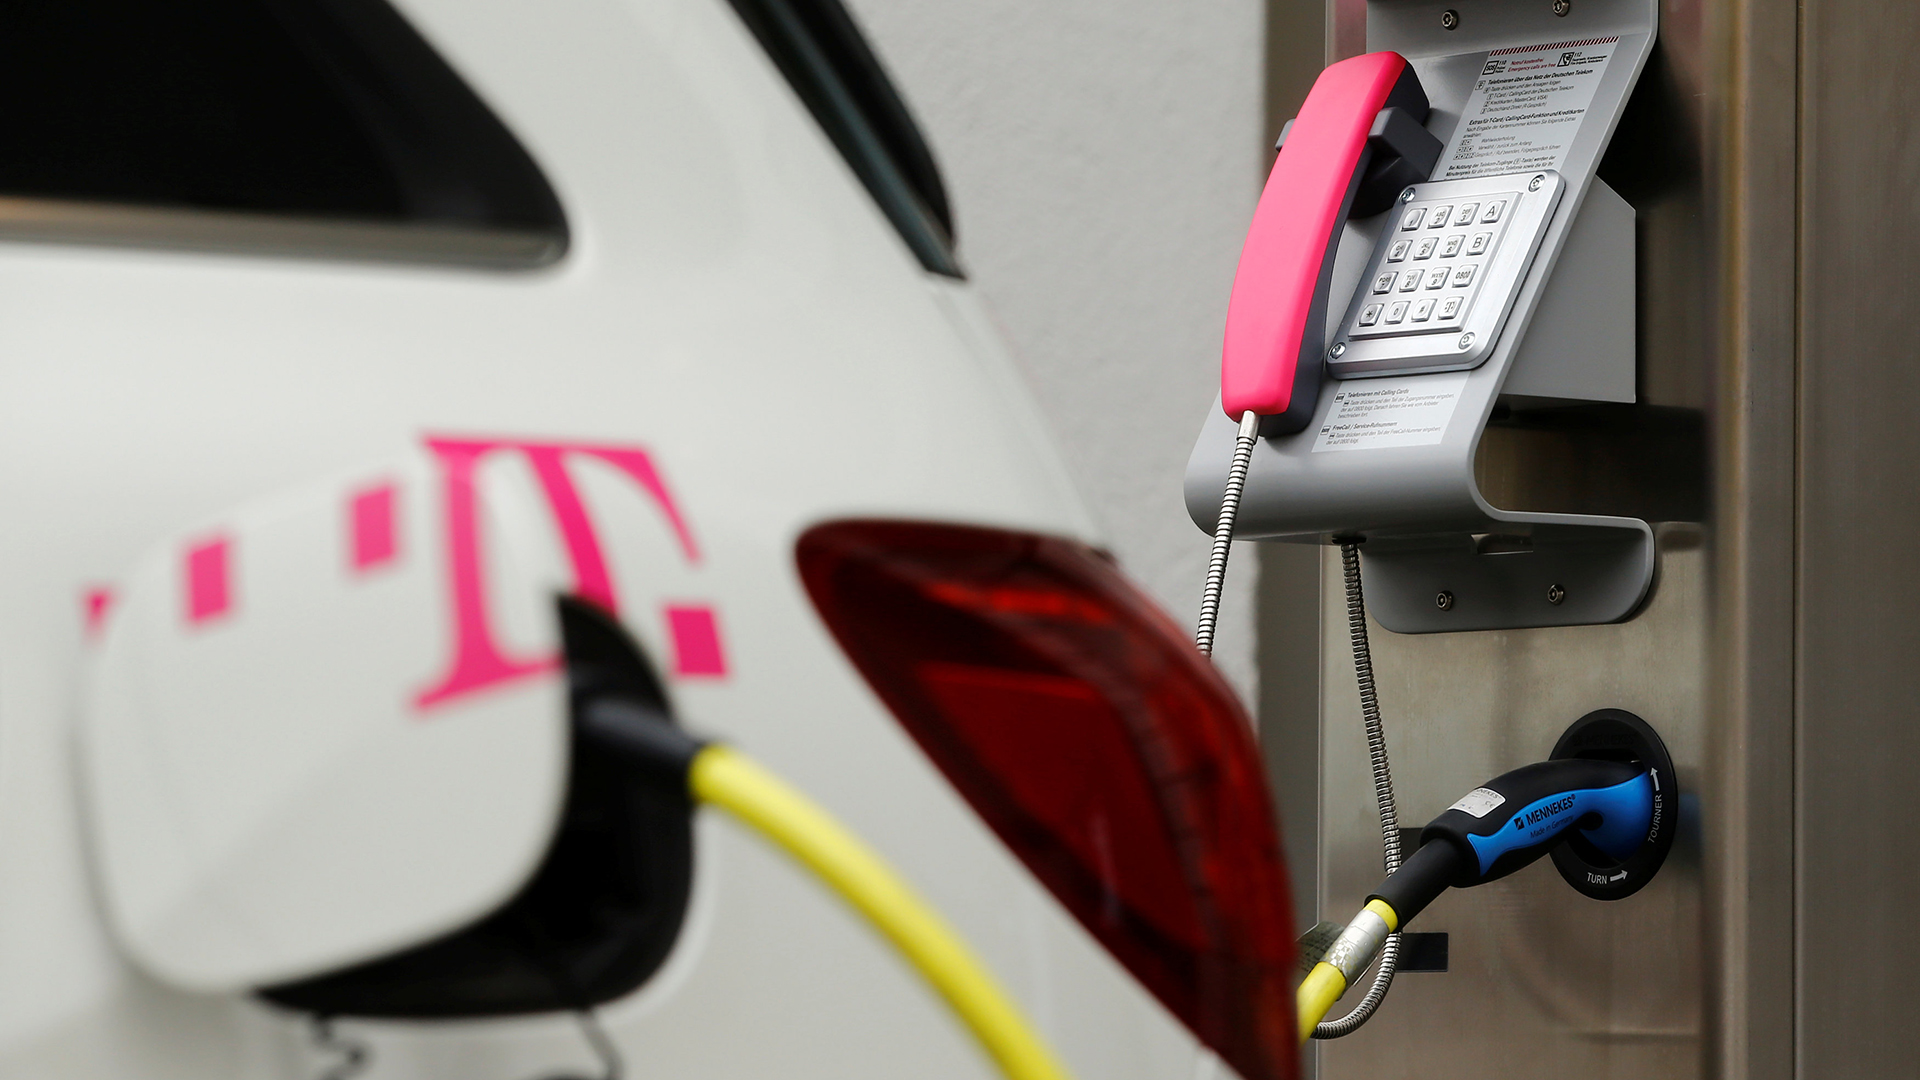 Ladestation für Elektroautos in eine Telefonzelle der Telekom integriert. | Bildquelle: REUTERS